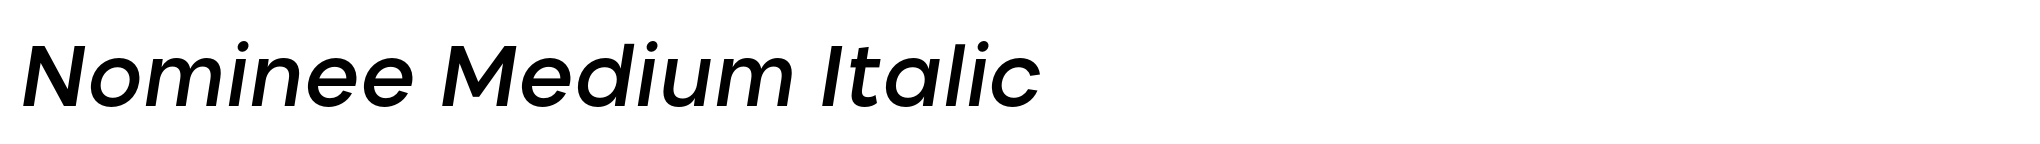 Nominee Medium Italic image